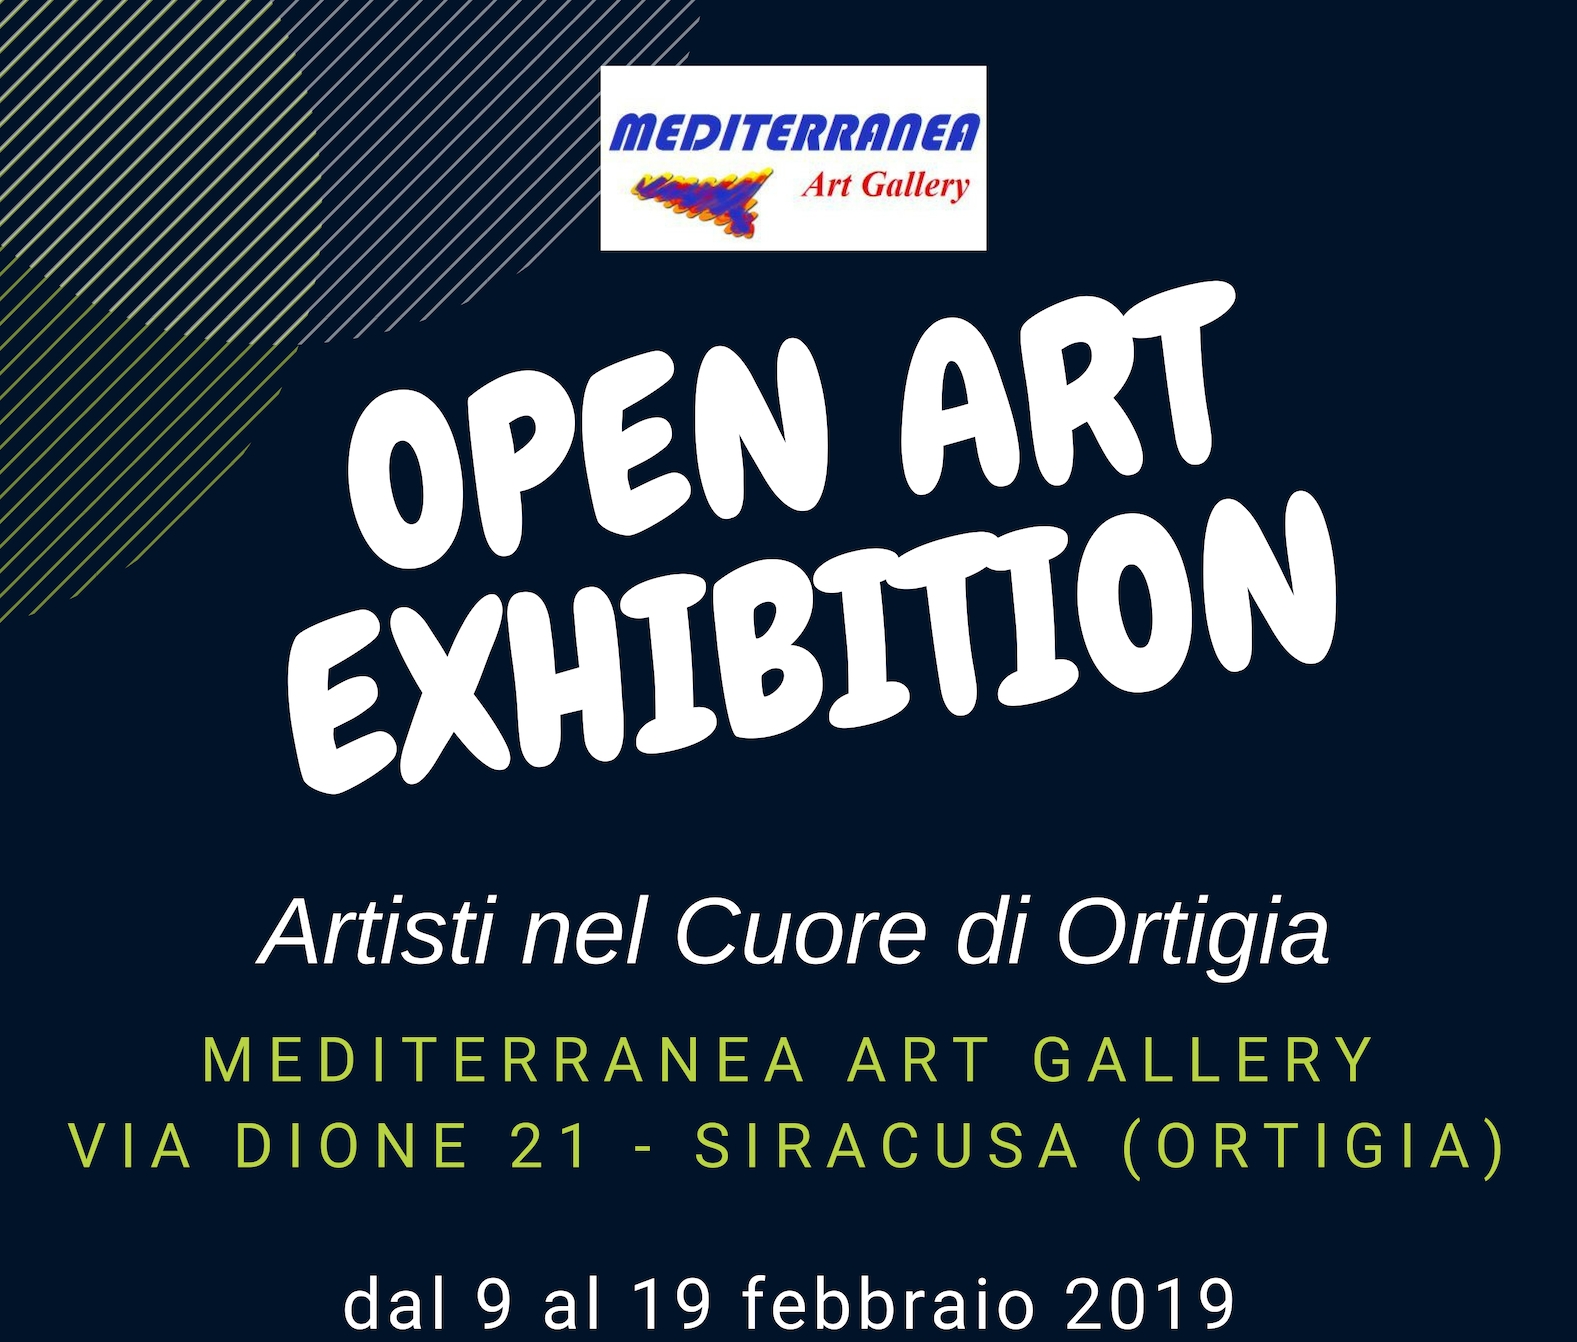 Open Art Exhibition alla Mediterranea Art Gallery di Siracusa dal 9 al 16 Febbraio